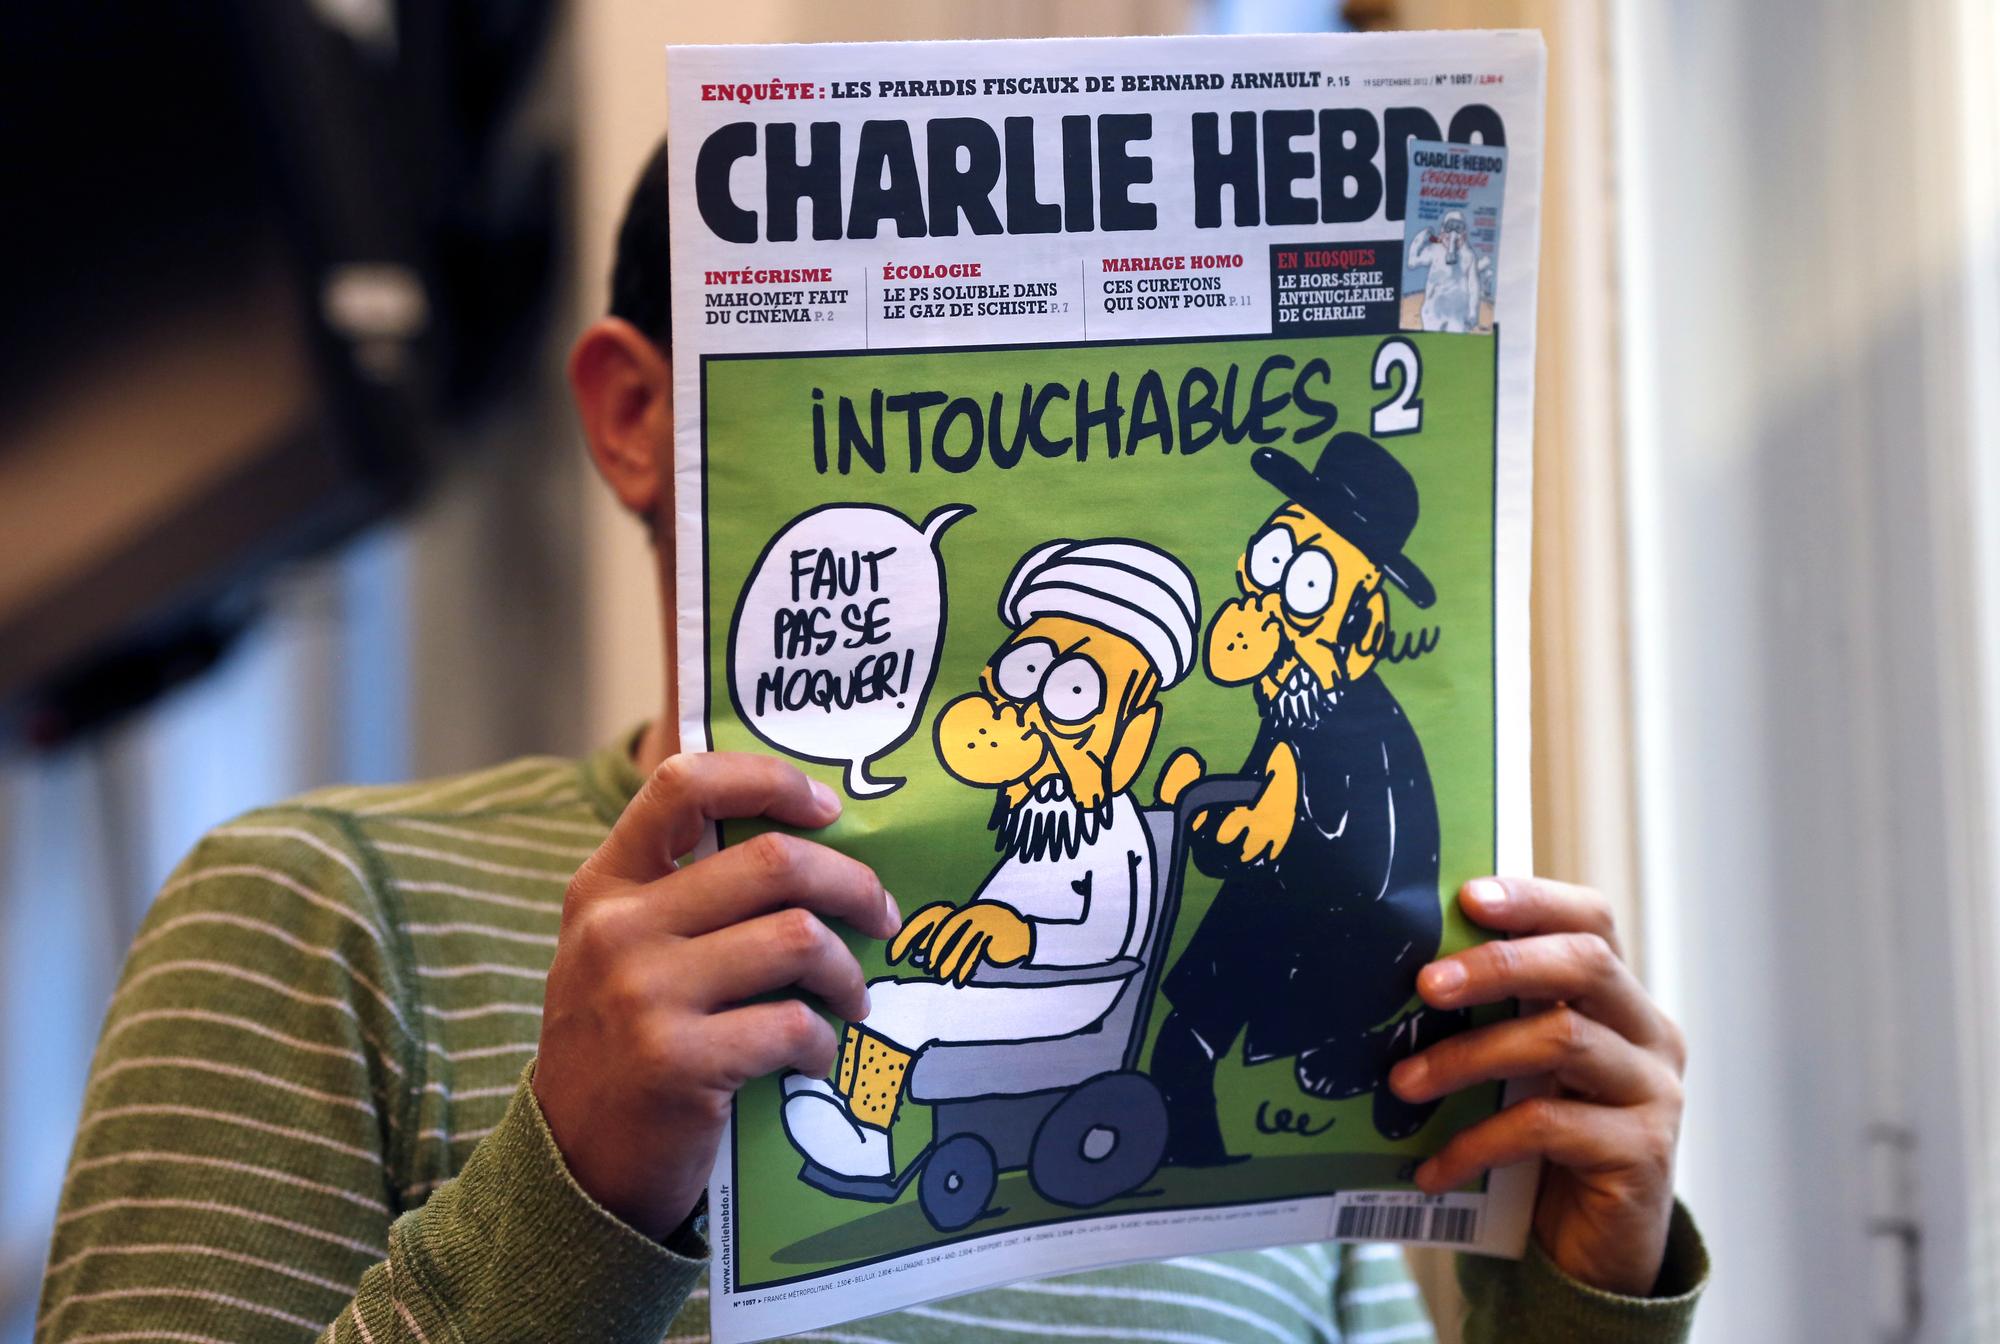 La couverture de Charlie Hebdo pastiche le film "Intouchables" et contient plusieurs caricatures de Mahomet en pages intérieures.